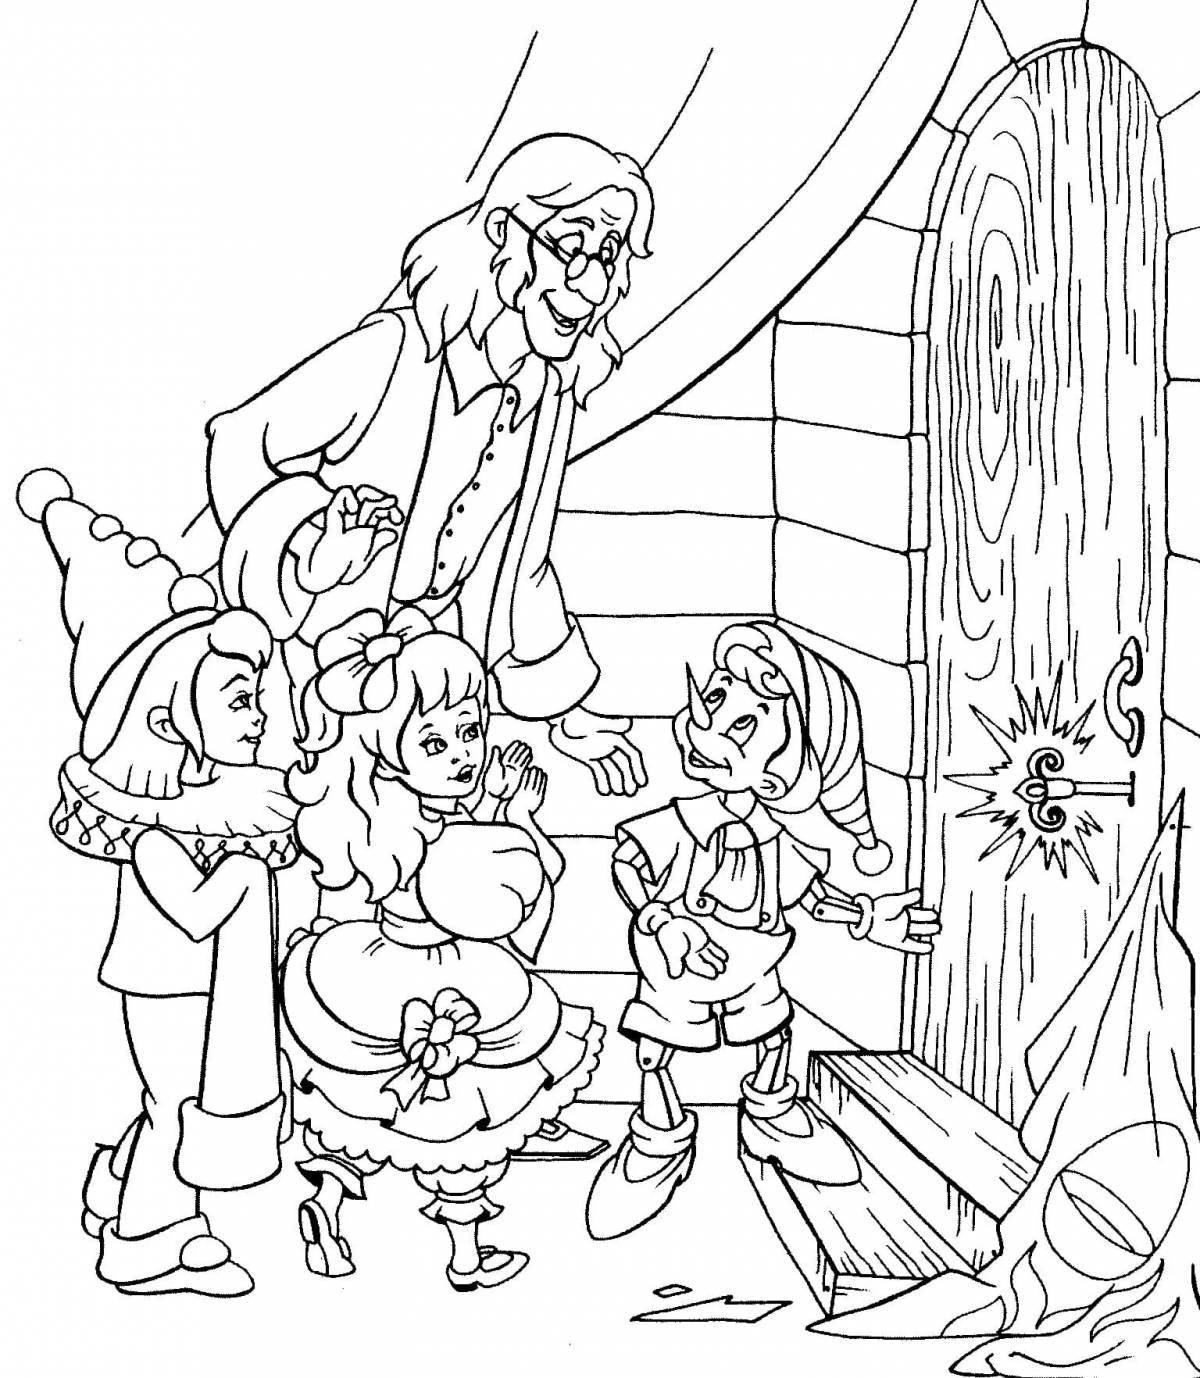 Очаровательная раскраска пиноккио для детей 6-7 лет